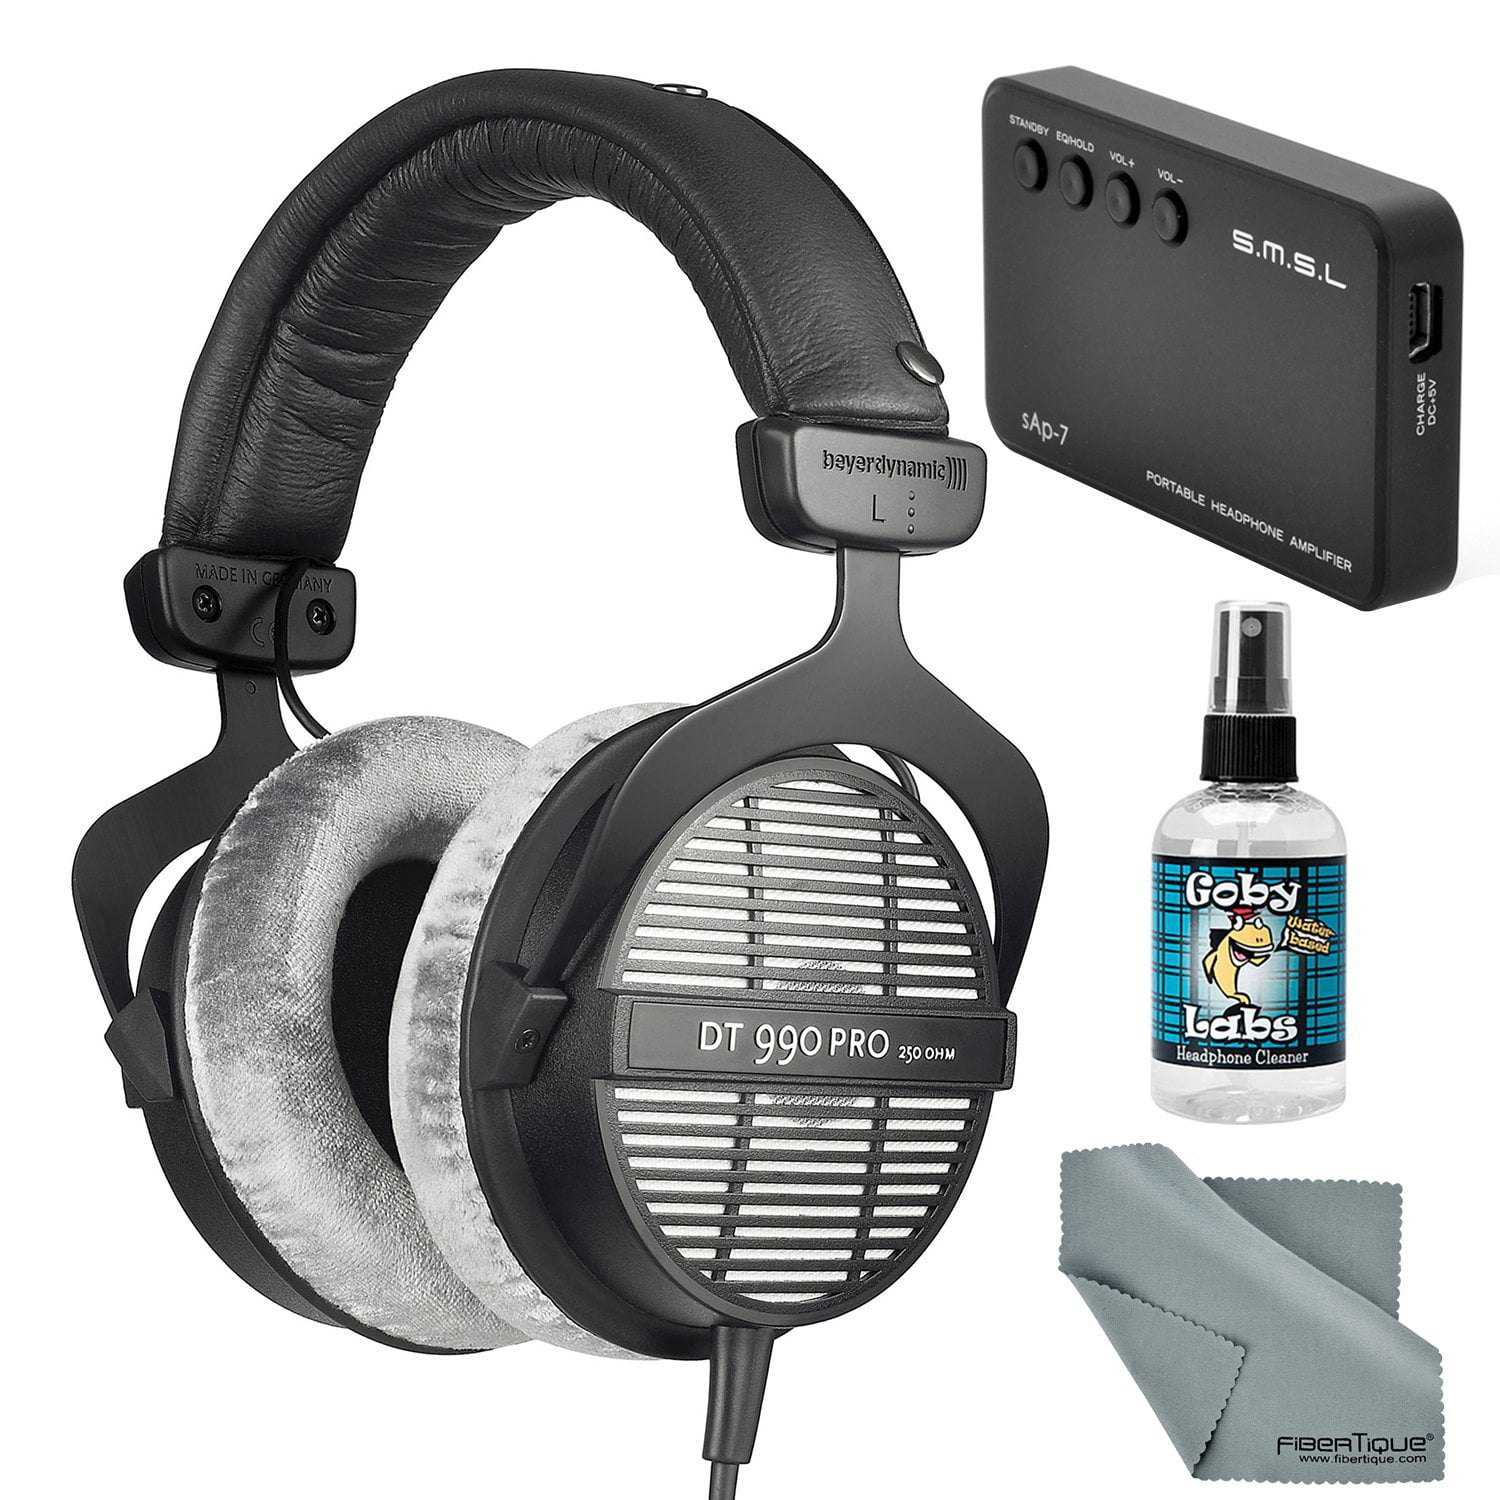 Beyerdynamic DT 990 PRO 250 Ohm Headphones with Amplifier + Cleaner +  Fibertique Cloth Bundle 